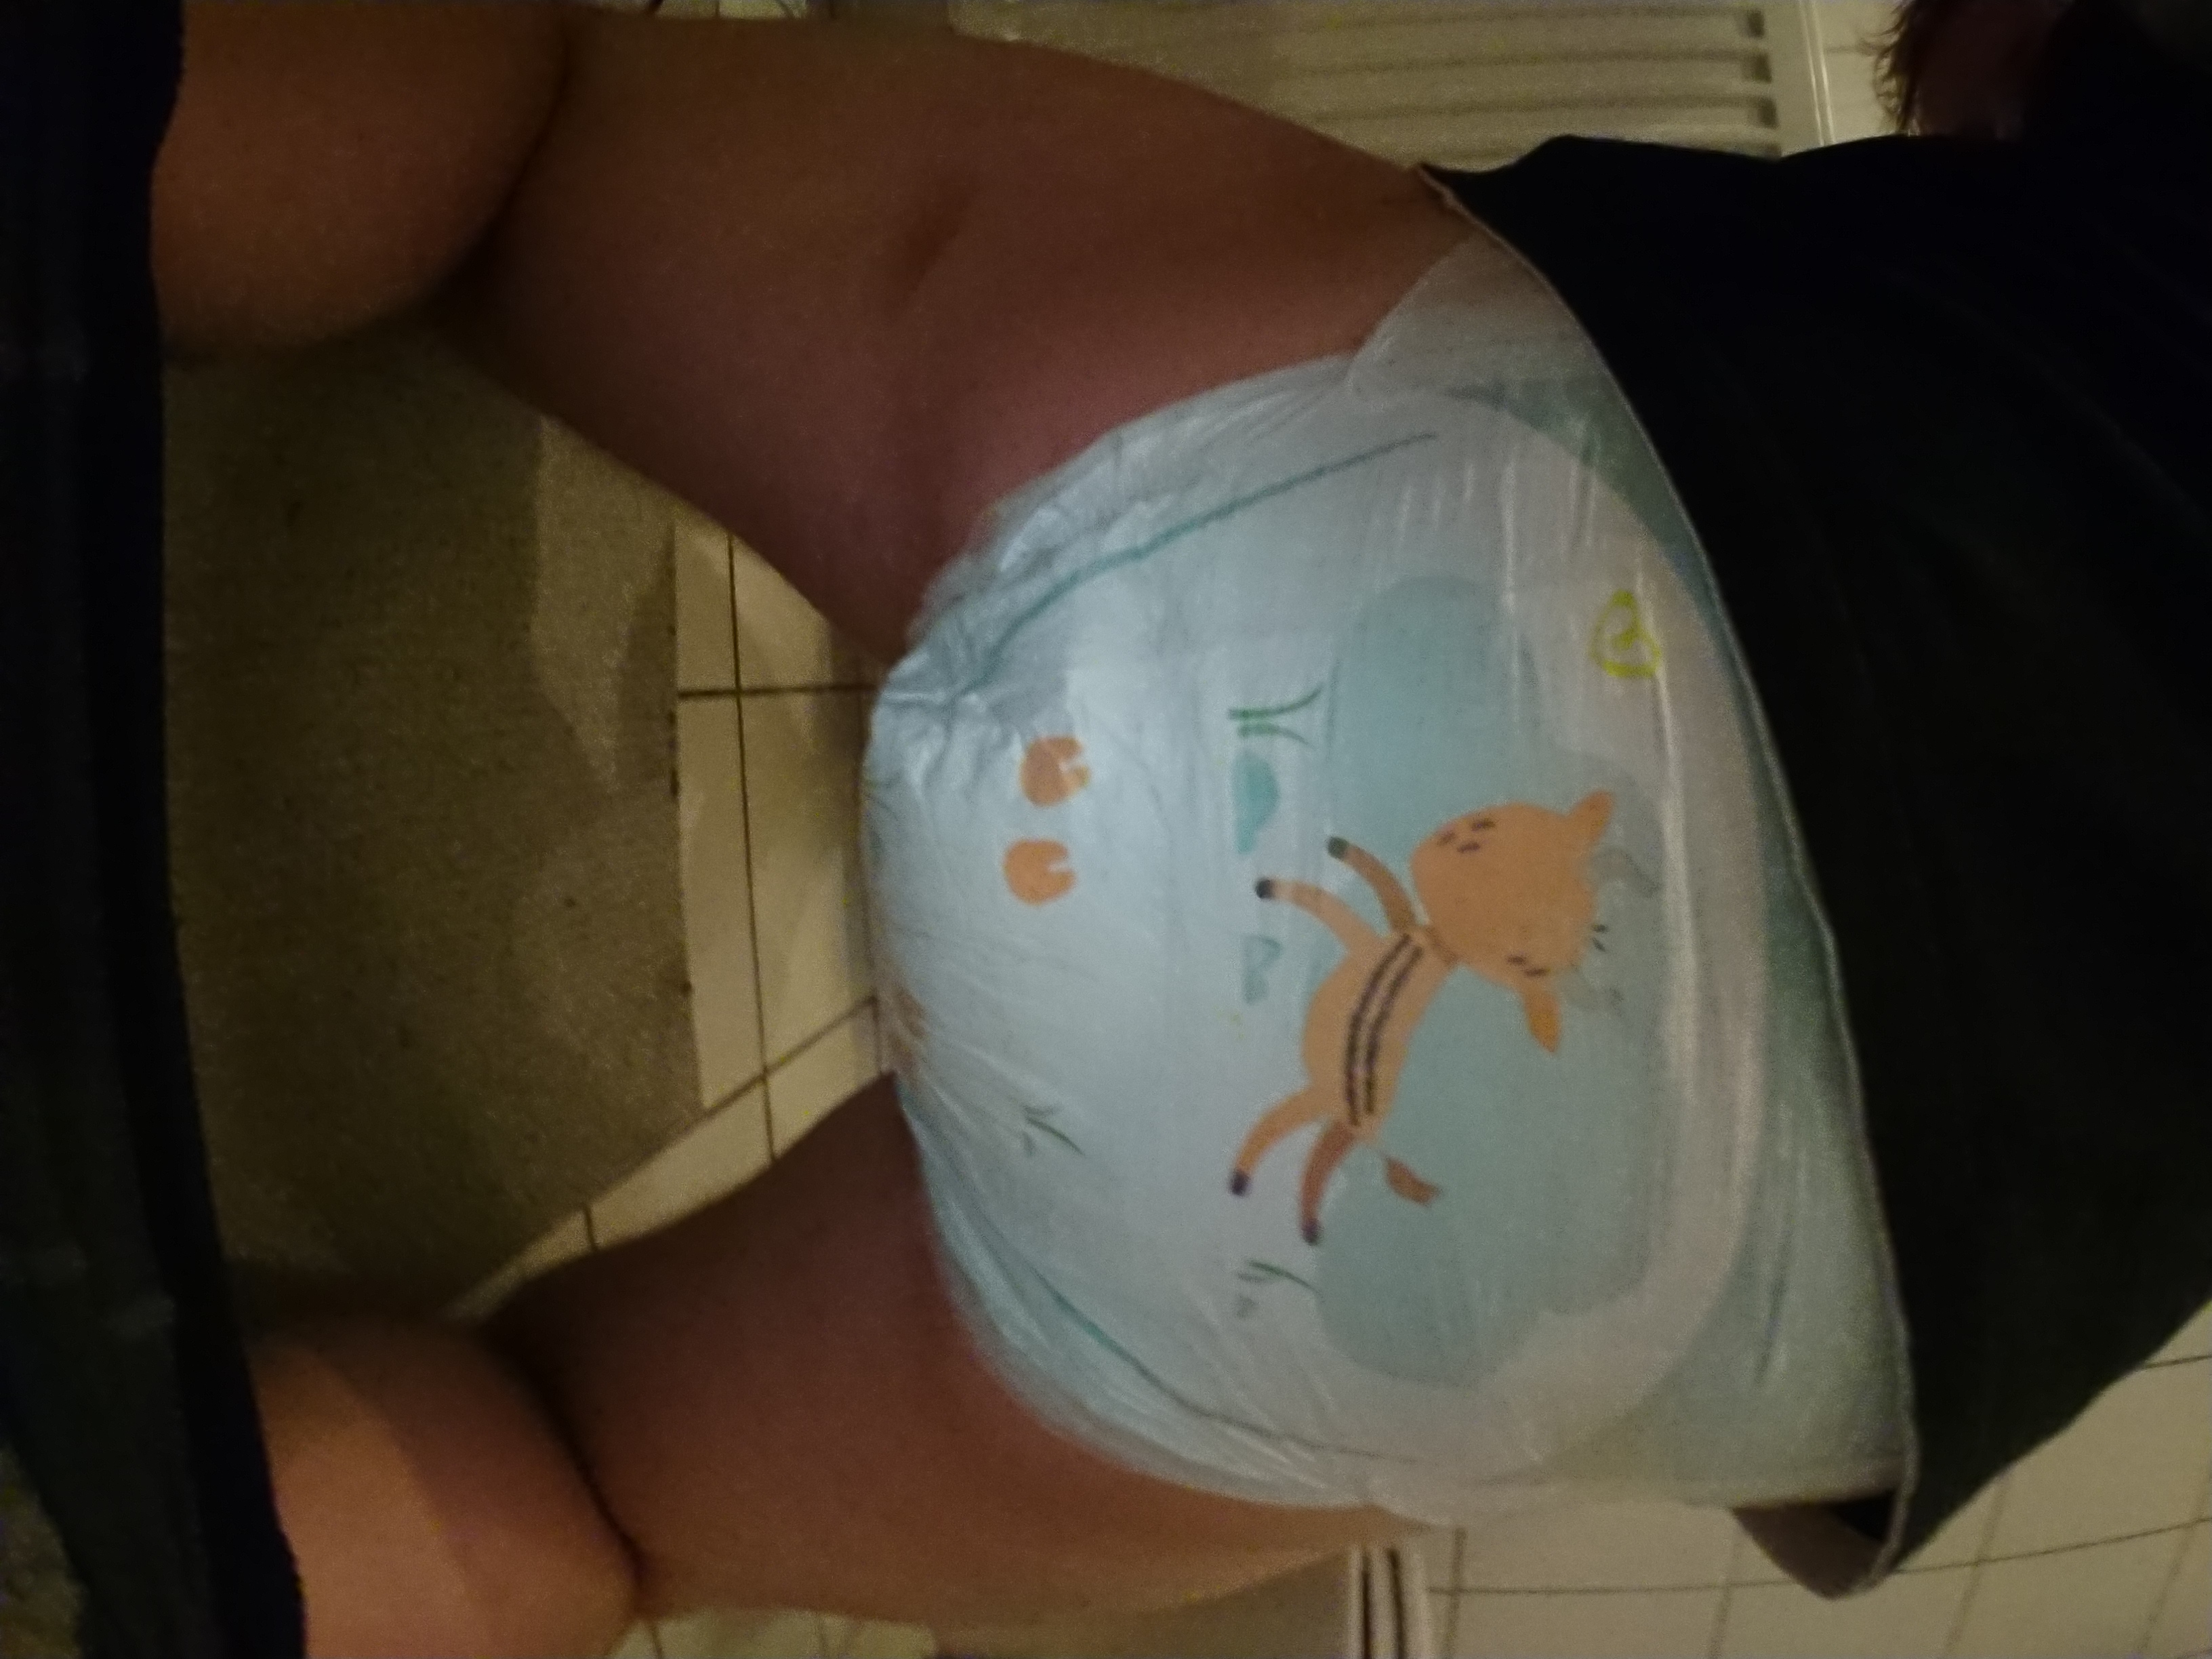 Messy pampers diaper poop